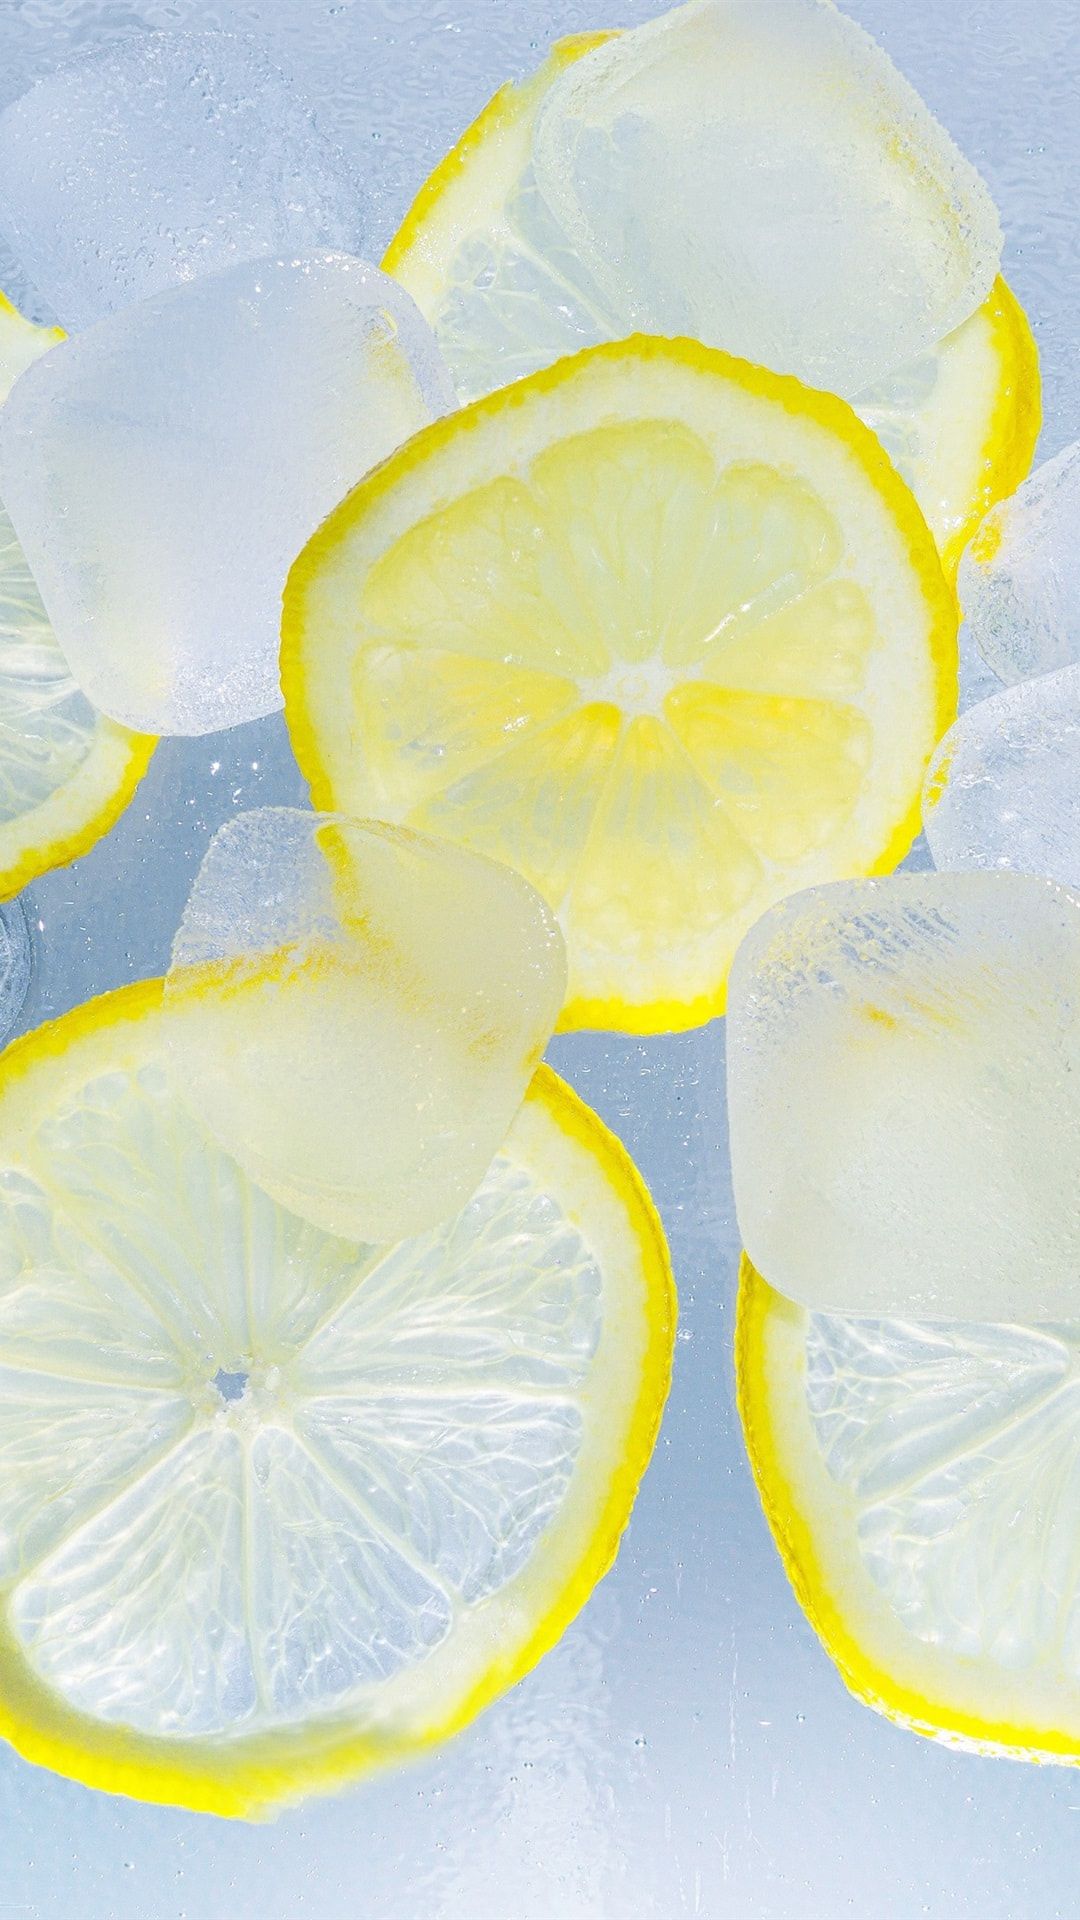 عکس استوک از لیمو های زرد رنگ ترش با یخ های مکعبی 